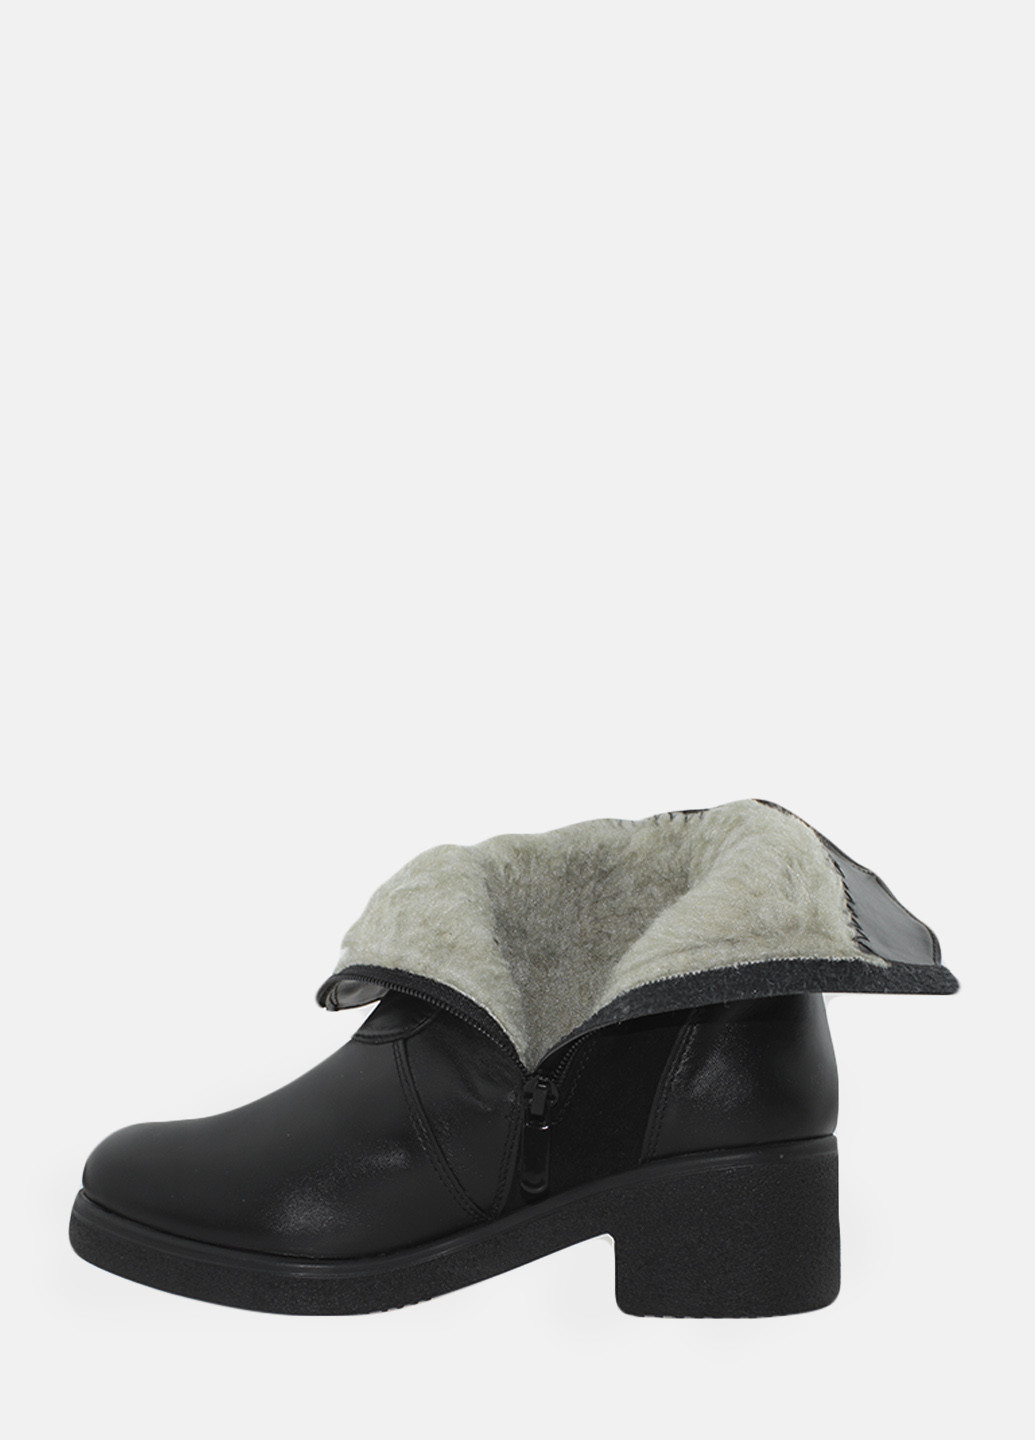 Зимние ботинки rg217-1 черный Alvista из натуральной замши